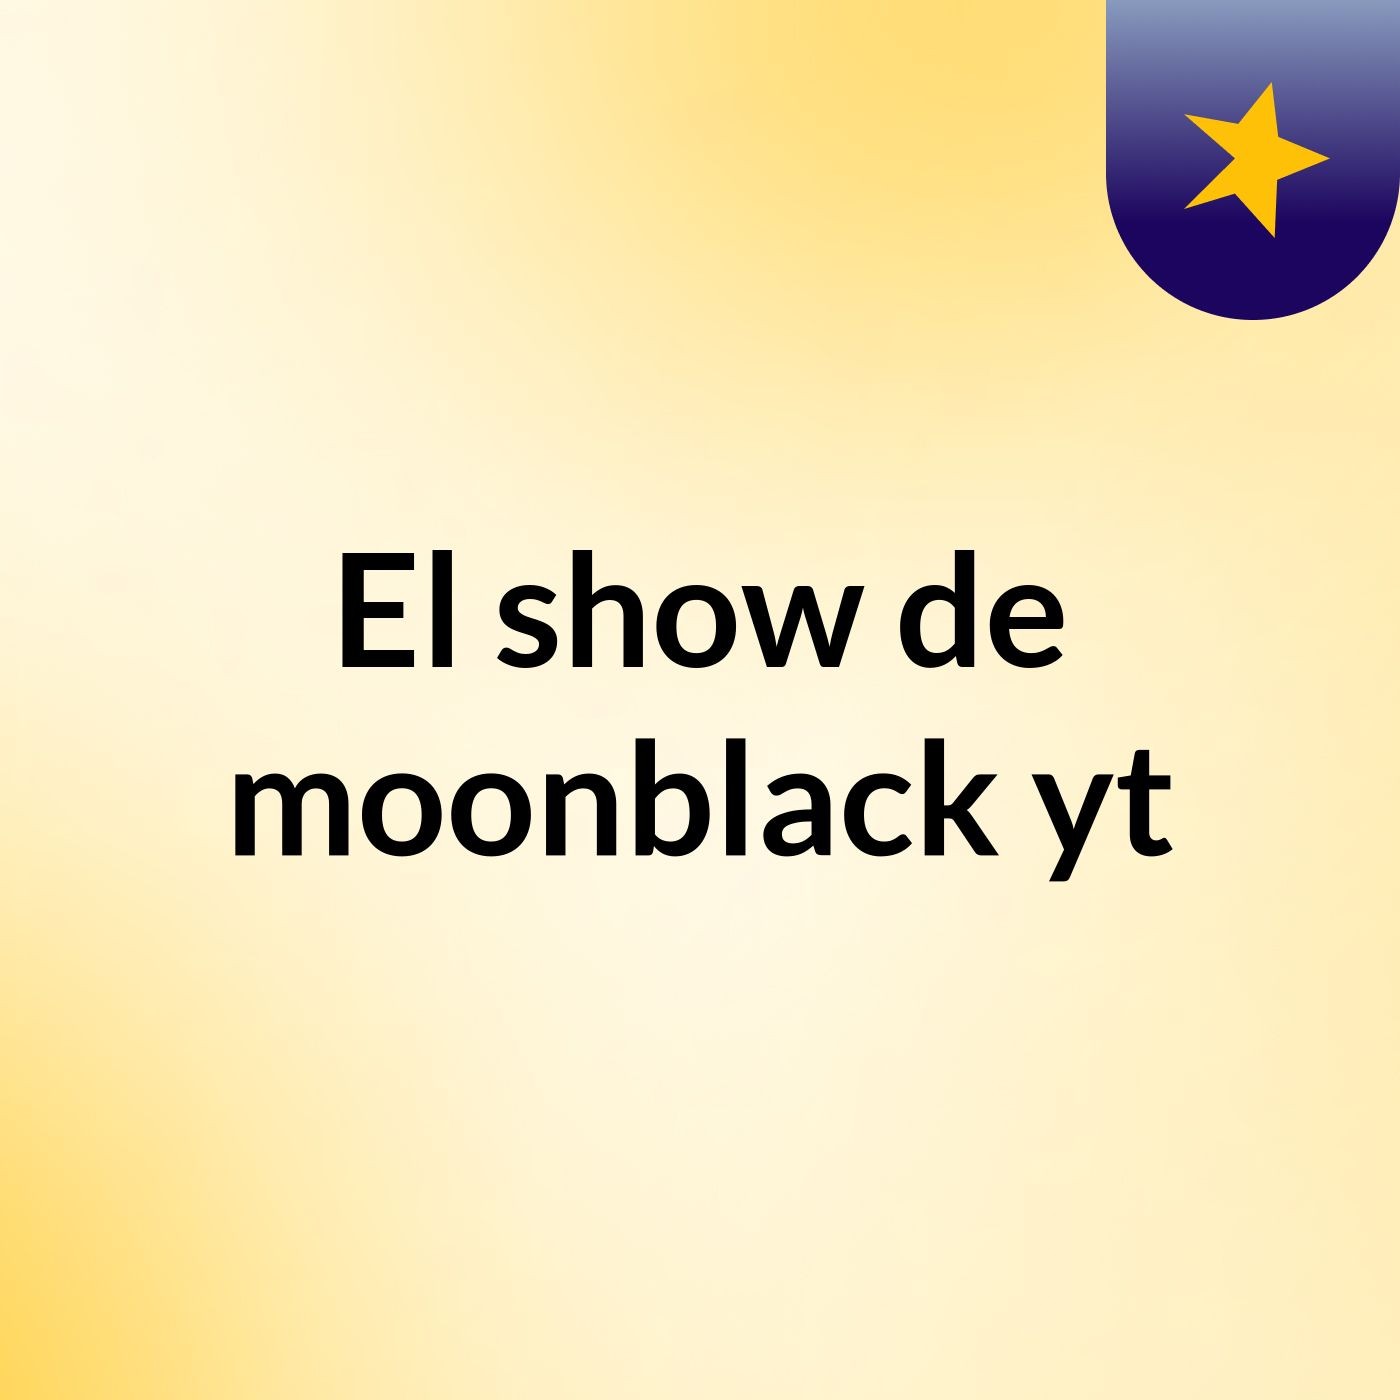 El show de moonblack yt